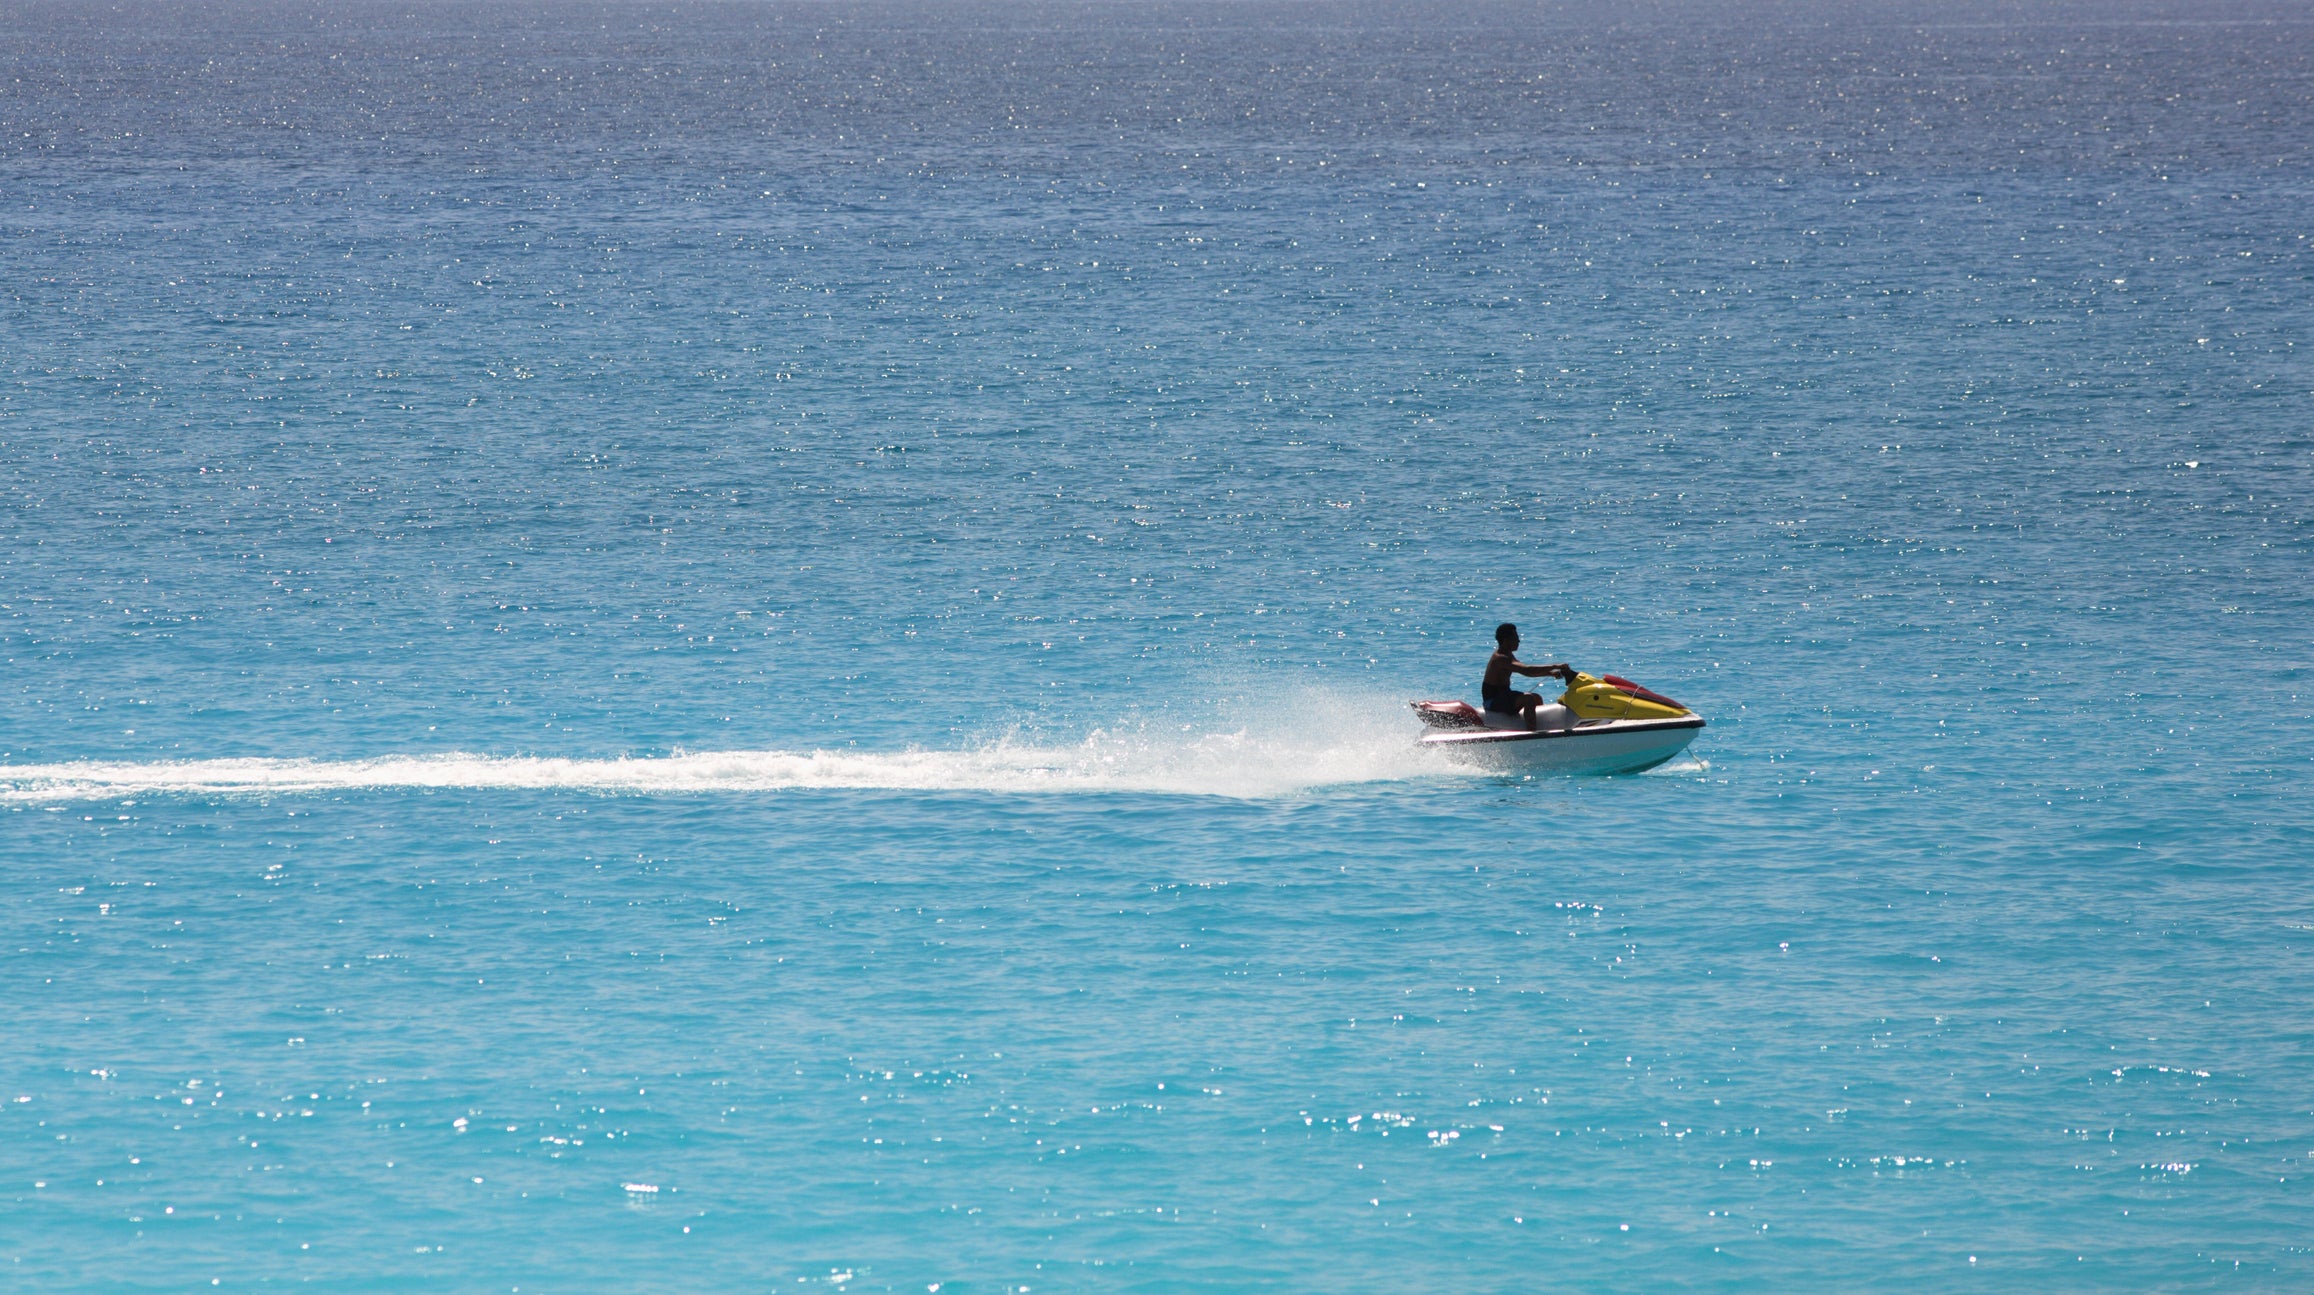 Stock image of jet skier in Caribbean